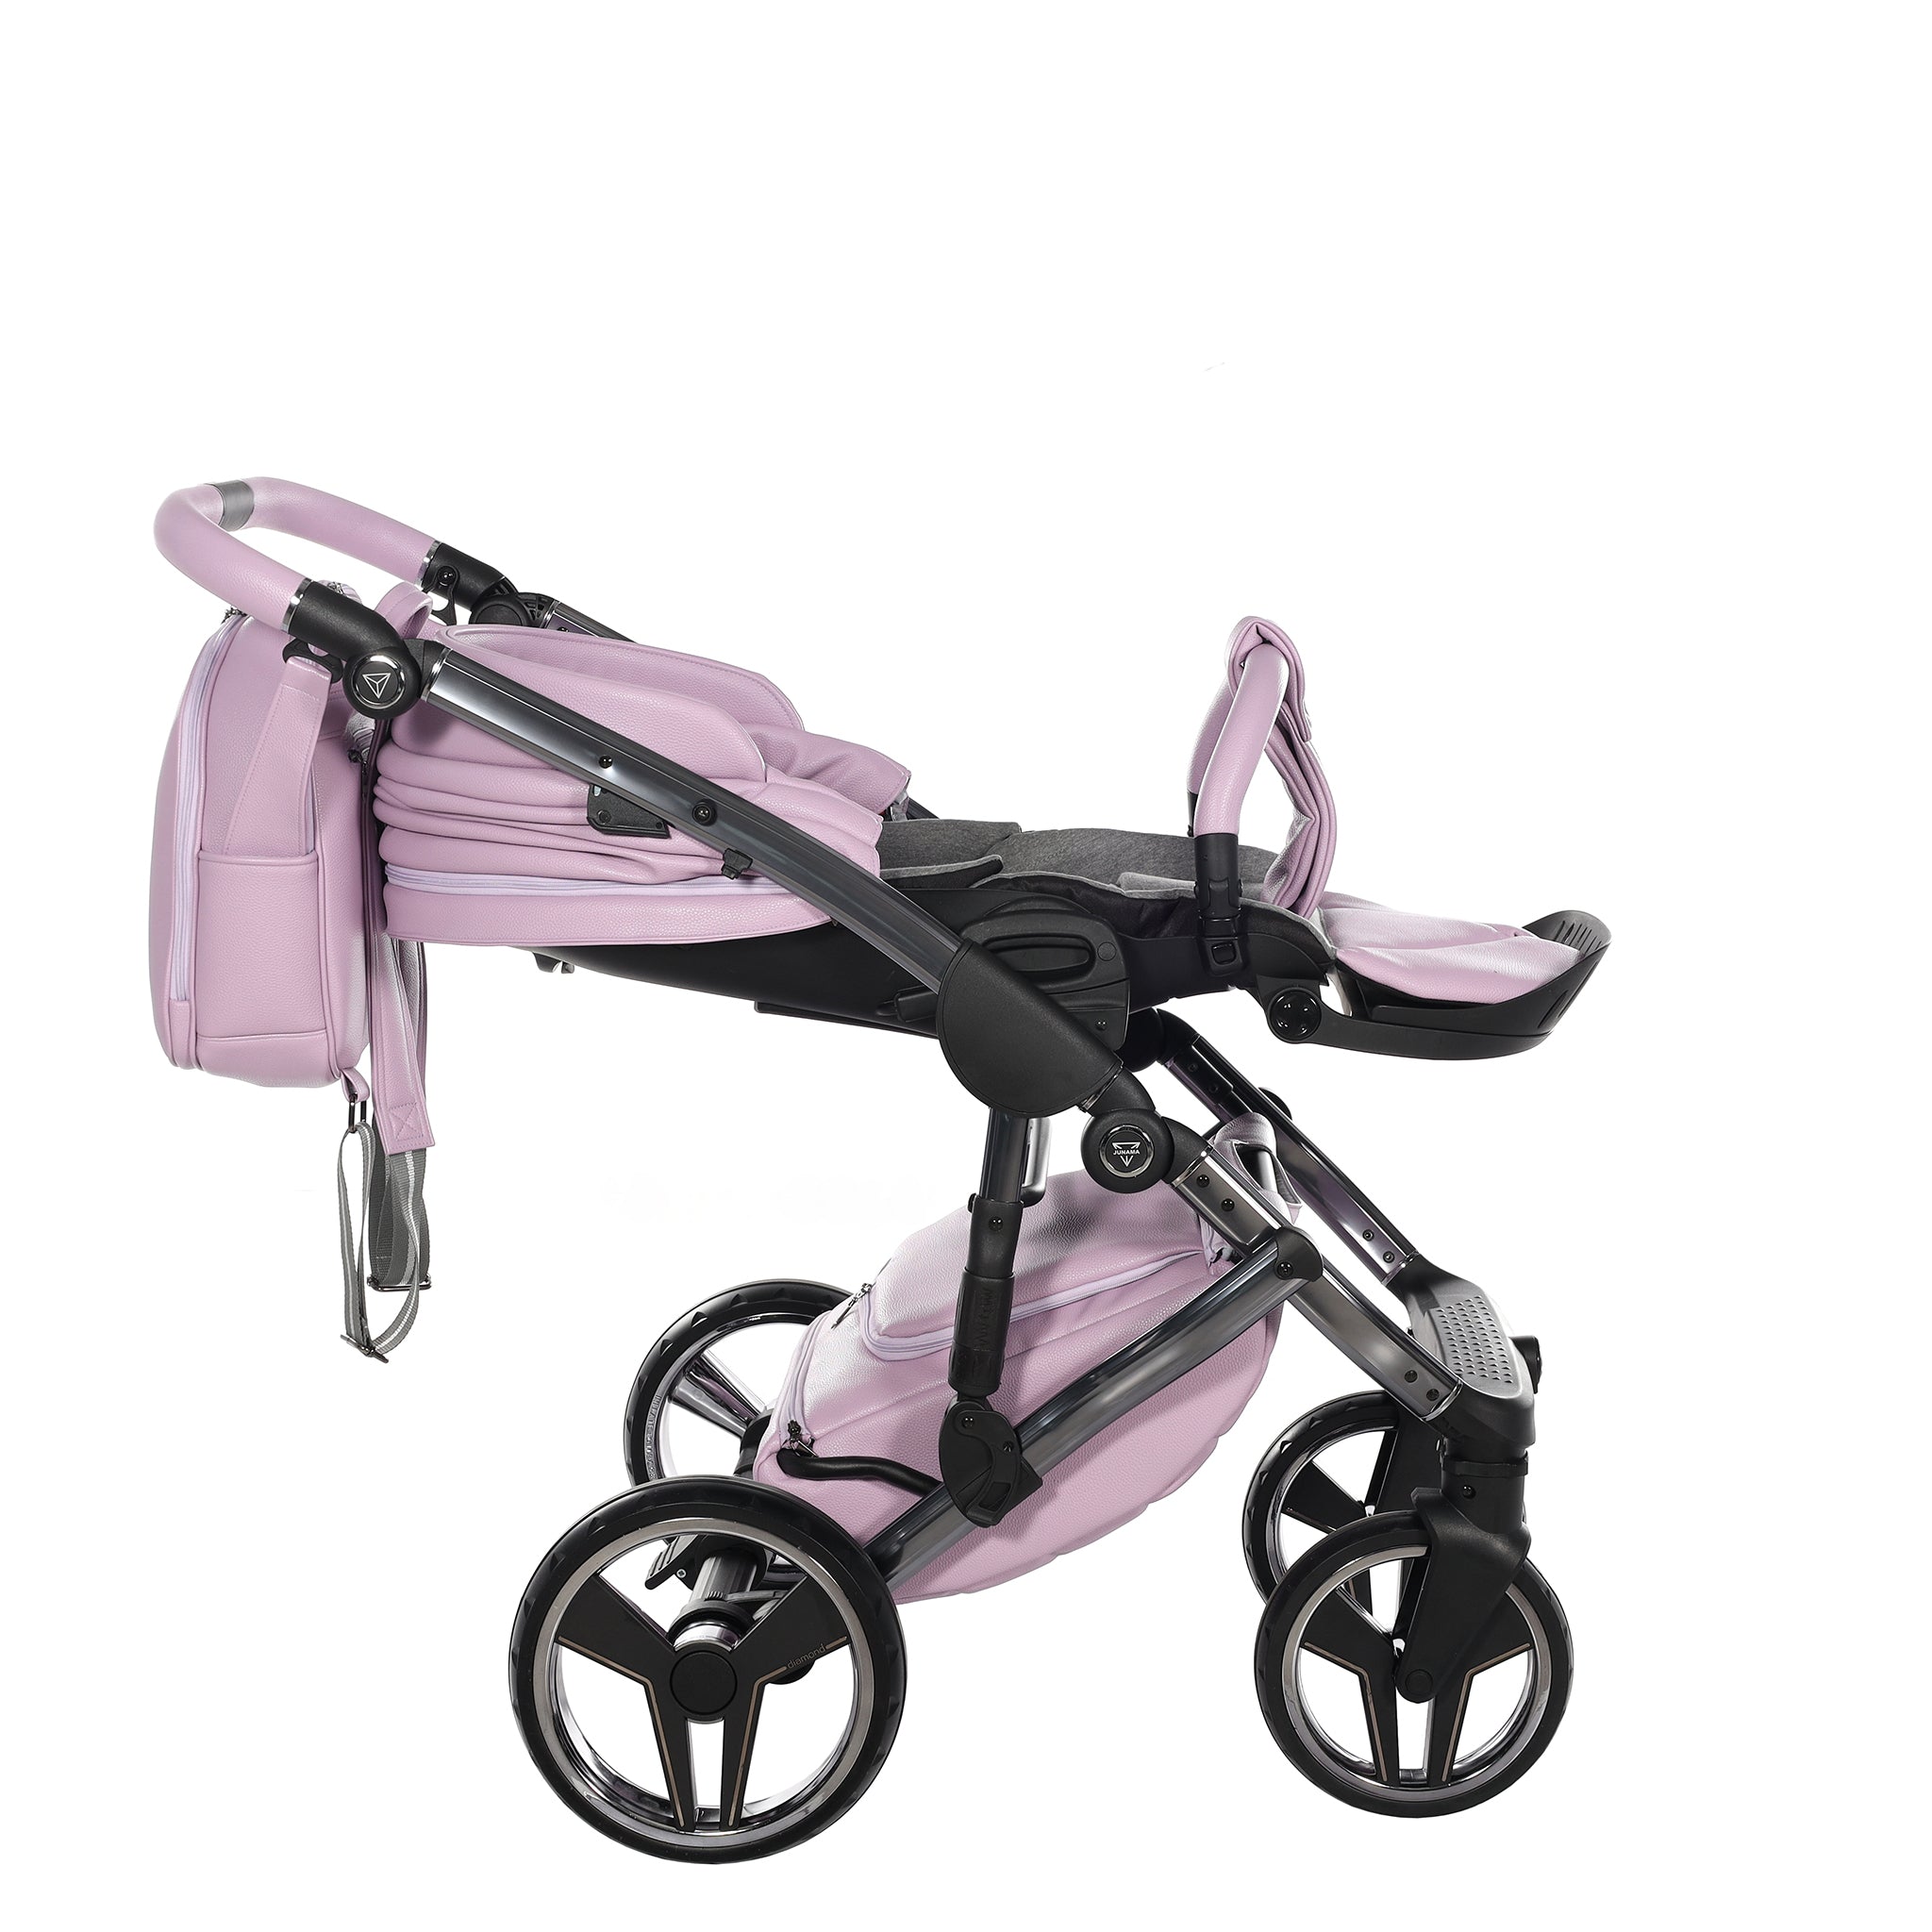 Junama Handcraft, baby prams or stroller 2 in 1 - Violet color, Code number: JUNHC03